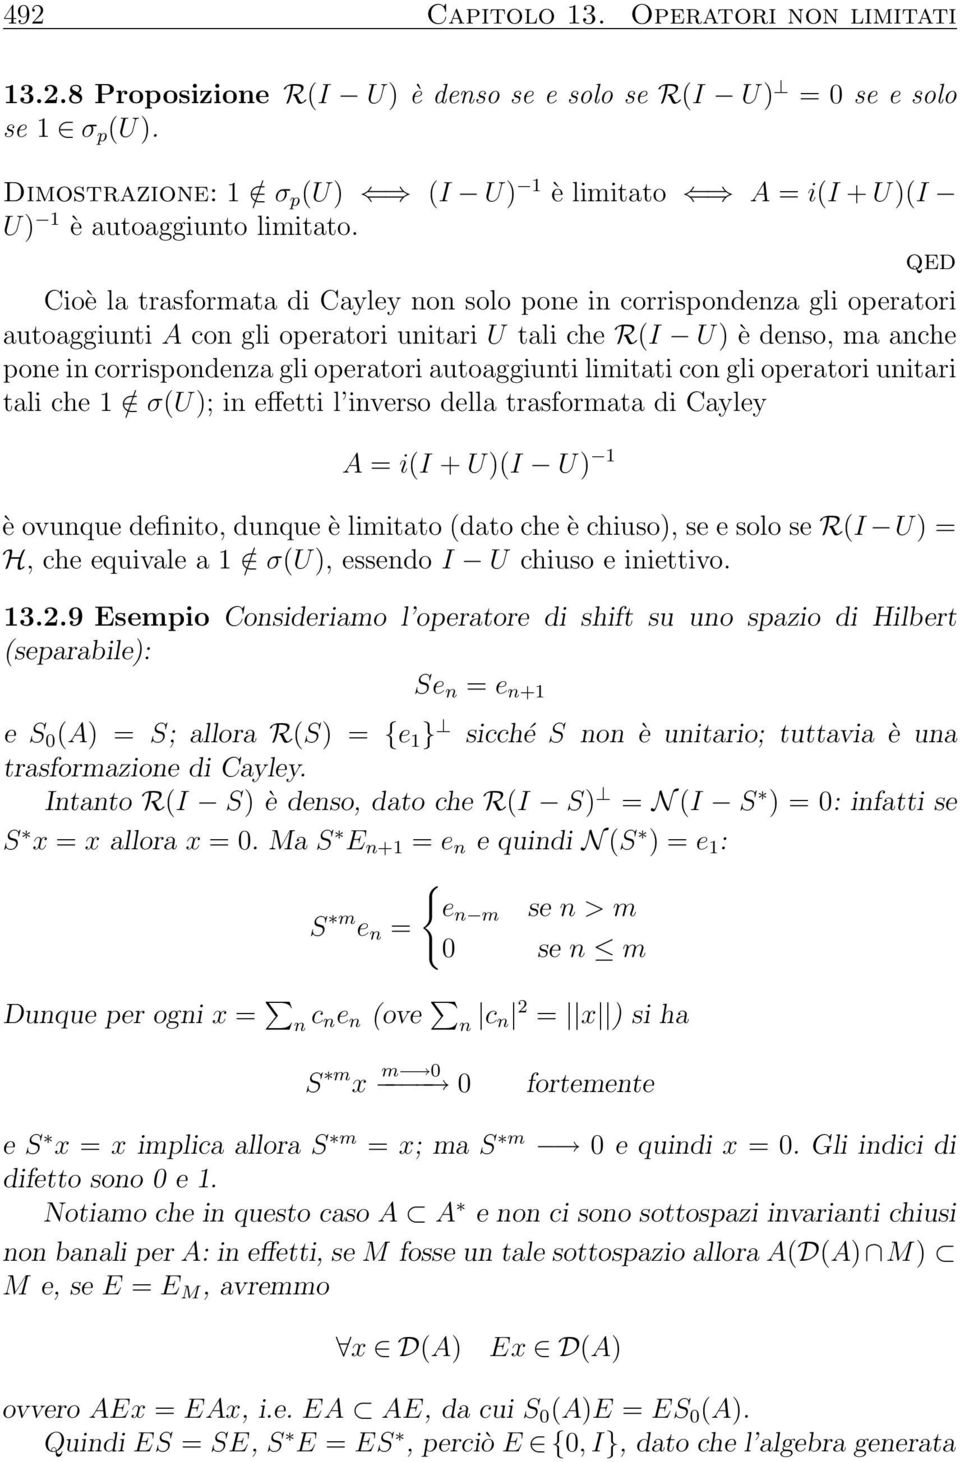 Cioè la trasformata di Cayley non solo pone in corrispondenza gli operatori autoaggiunti A con gli operatori unitari U tali che R(I U) è denso, ma anche pone in corrispondenza gli operatori